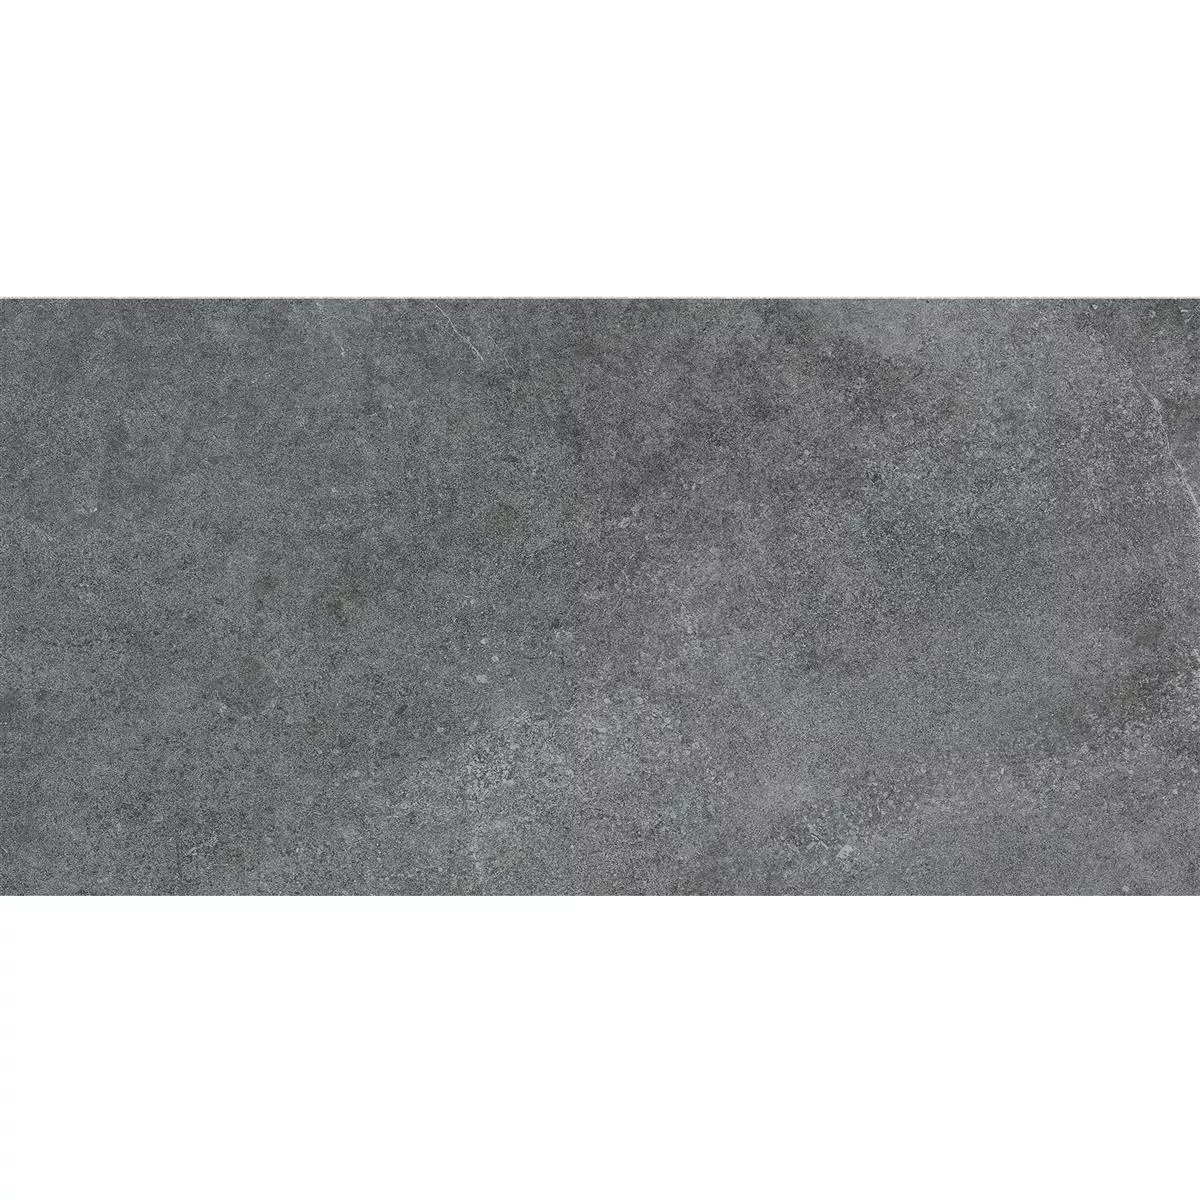 Πλακάκια Δαπέδου Montana Άγυαλο Ανθρακίτης 30x60cm / R10B